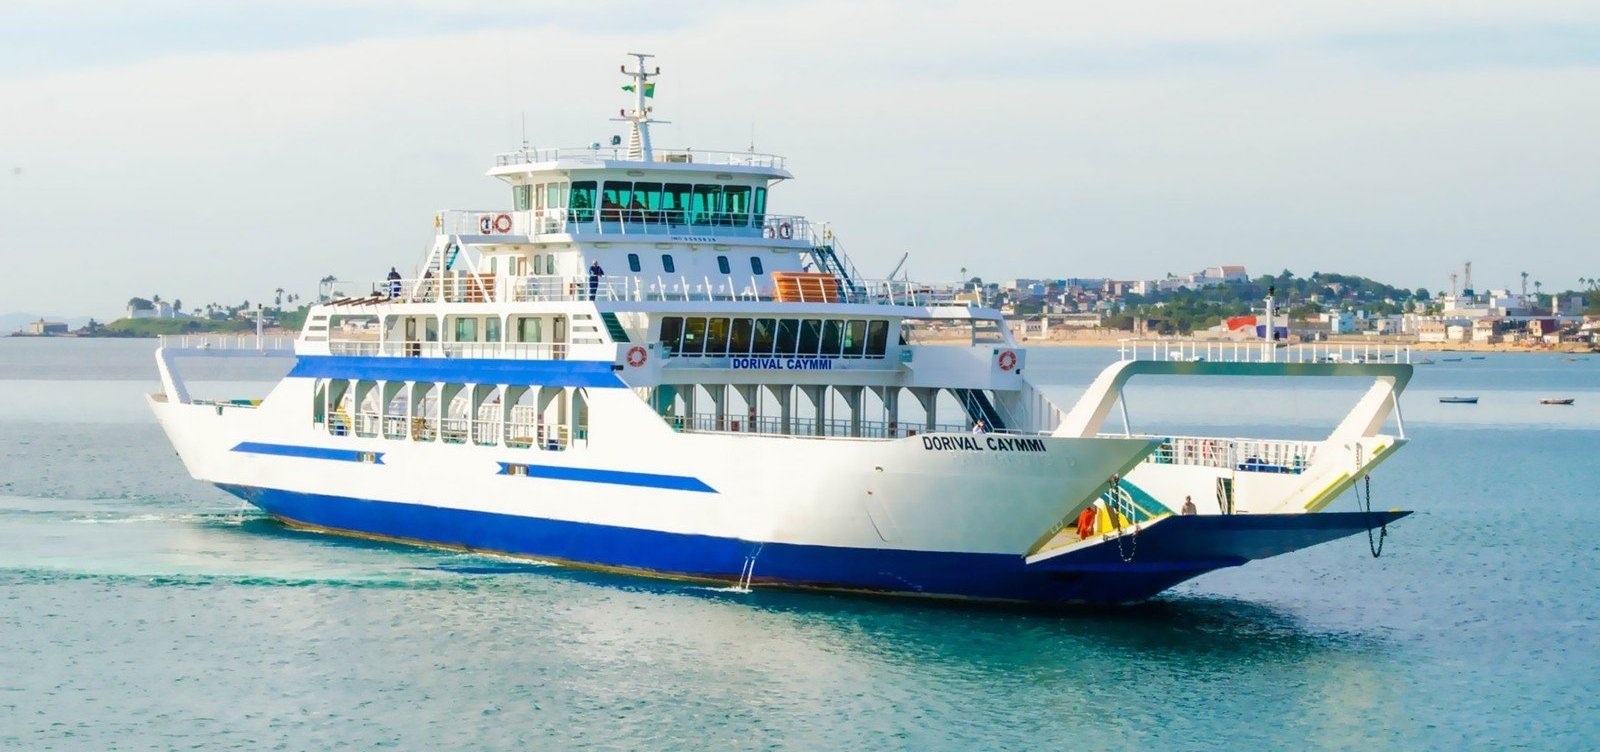 Novos preços da passagem do ferry-boat começam a valer a partir deste sábado